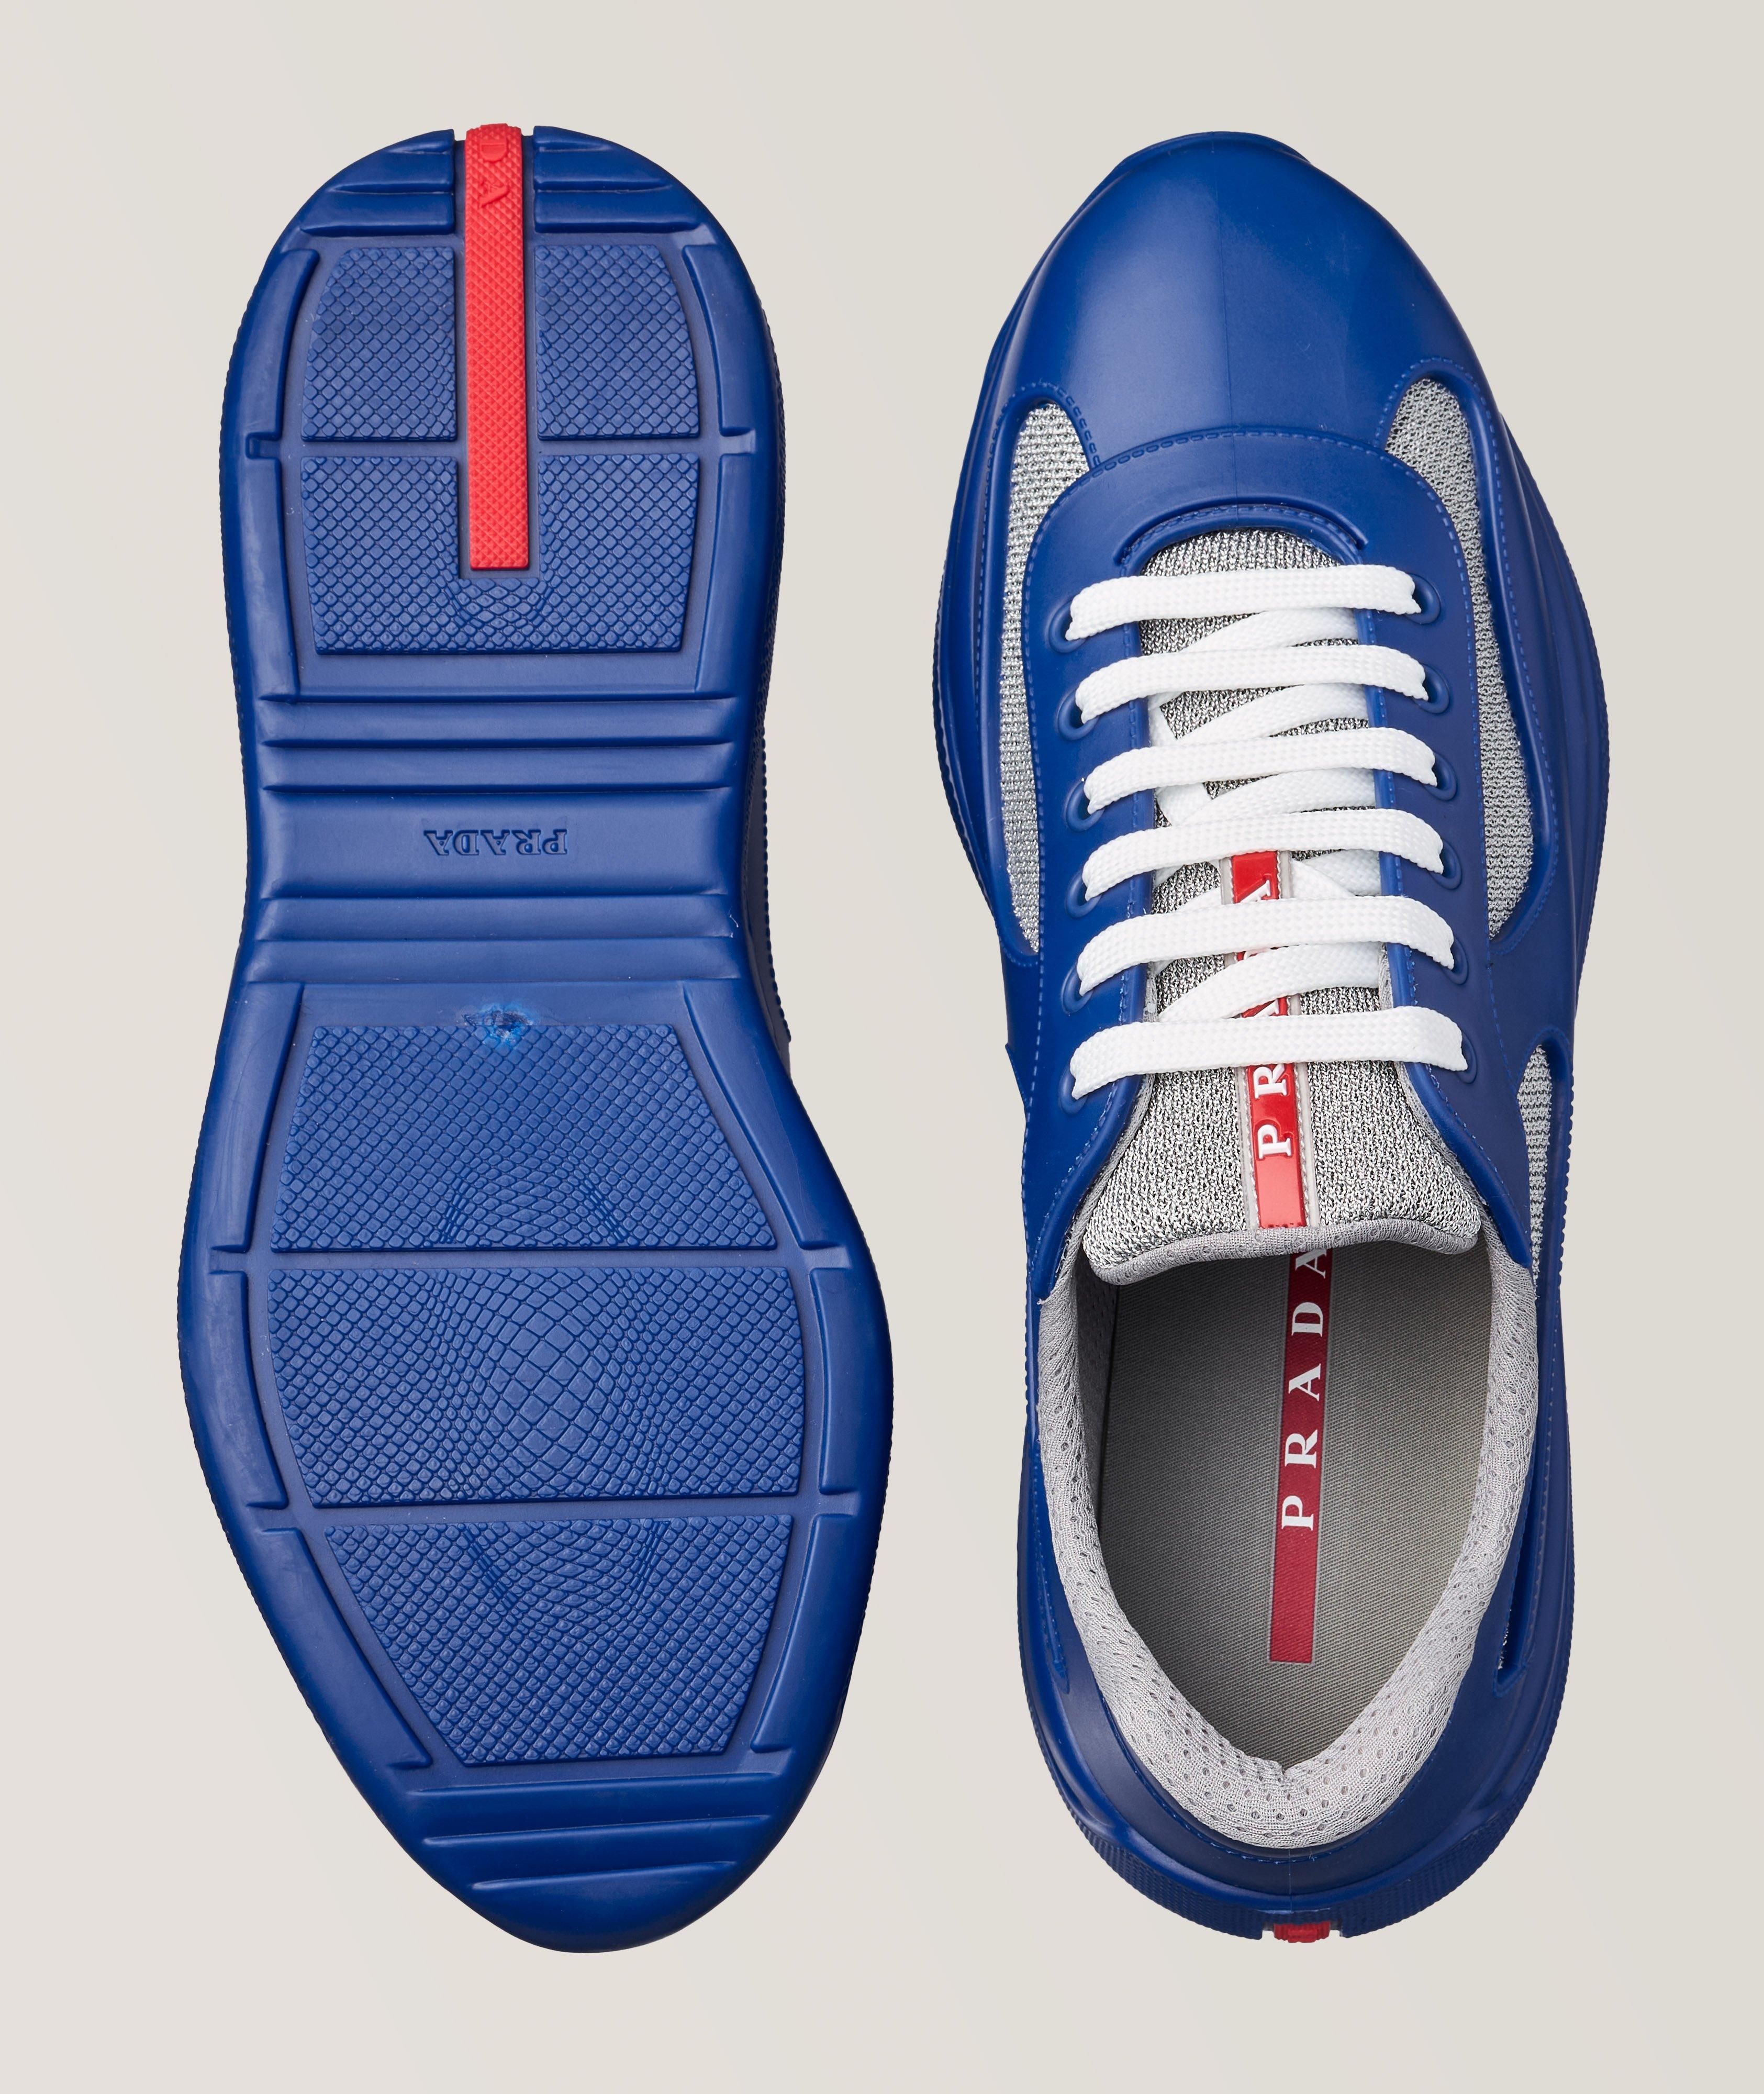 Chaussure sport Coupe de l’America aux textures variées image 2